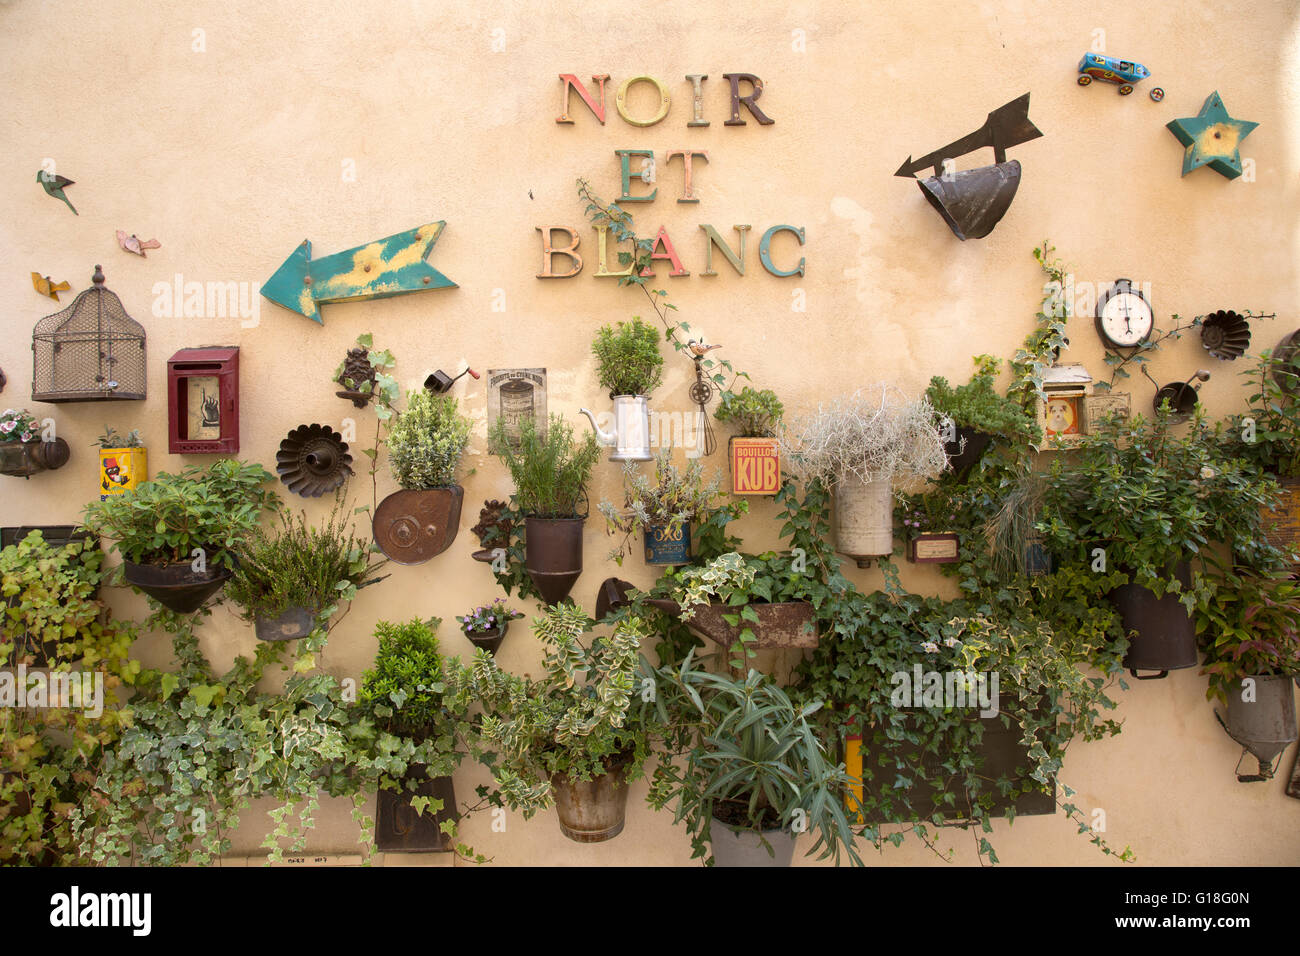 Noir et Blanc Shop Sign, Saint Remy de Provence, France Stock Photo